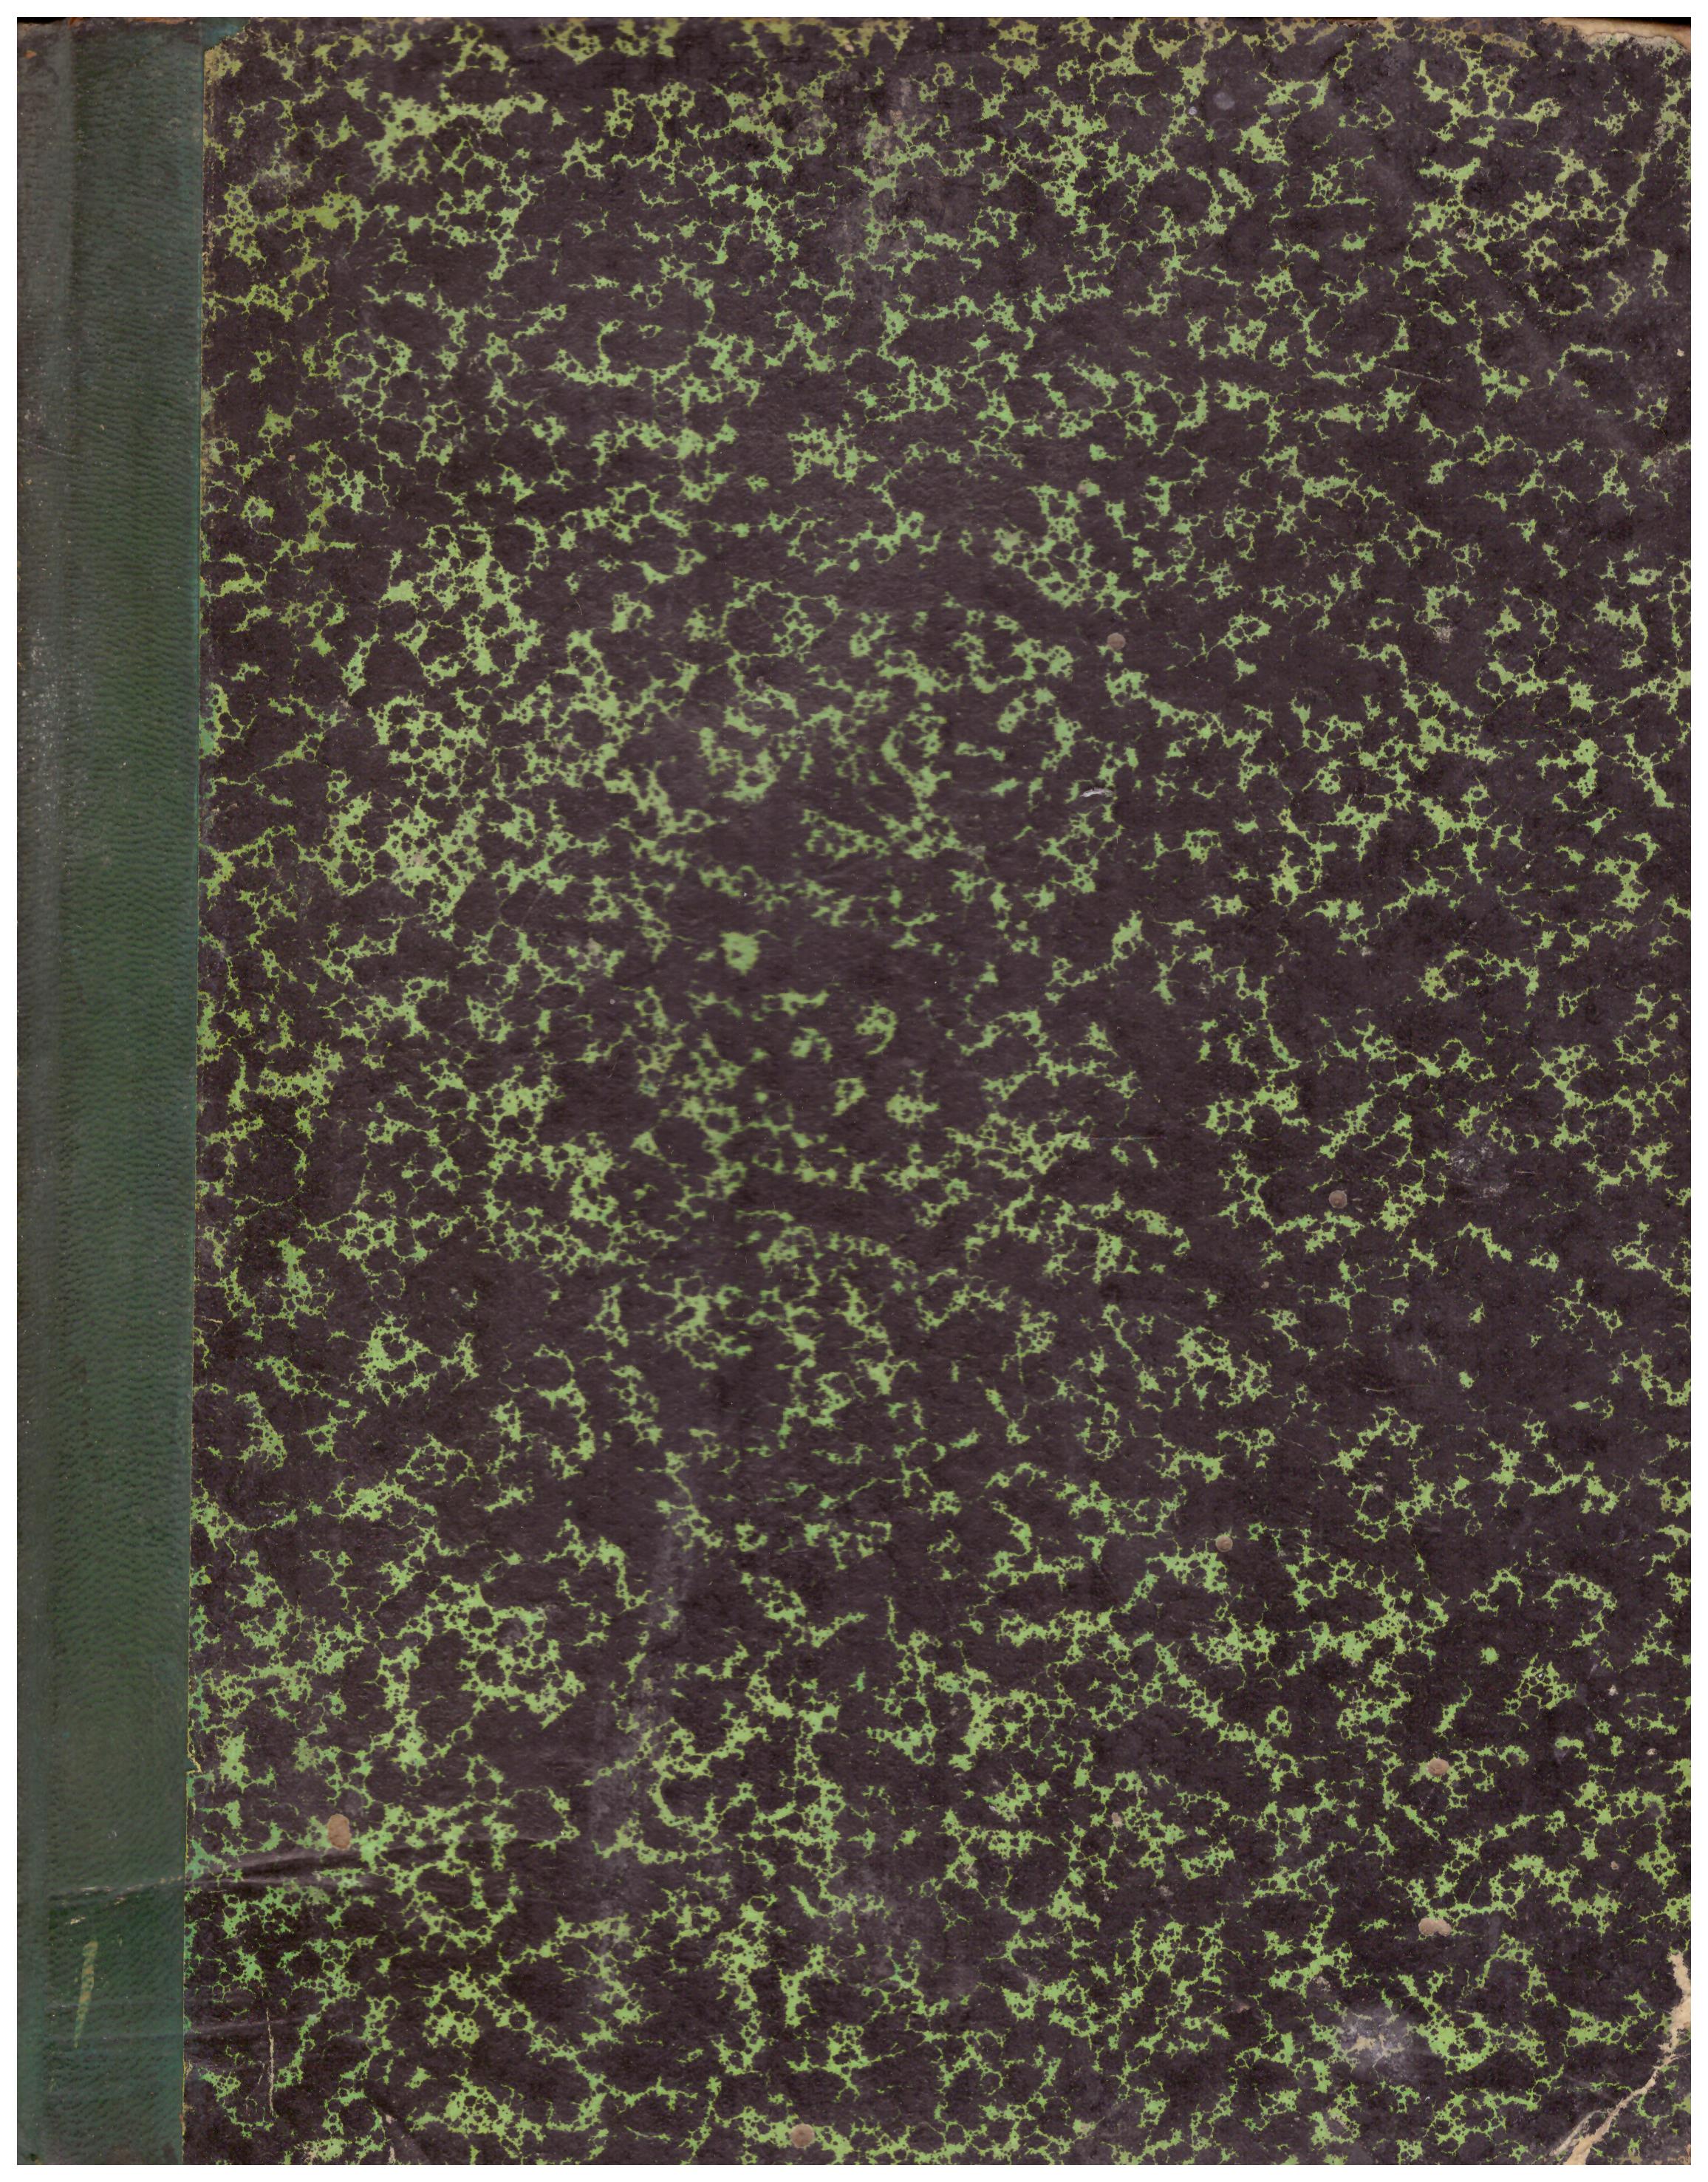 Titolo: Numero rivista 1919  Autore: AA.VV.  Editore: N.D. 1920